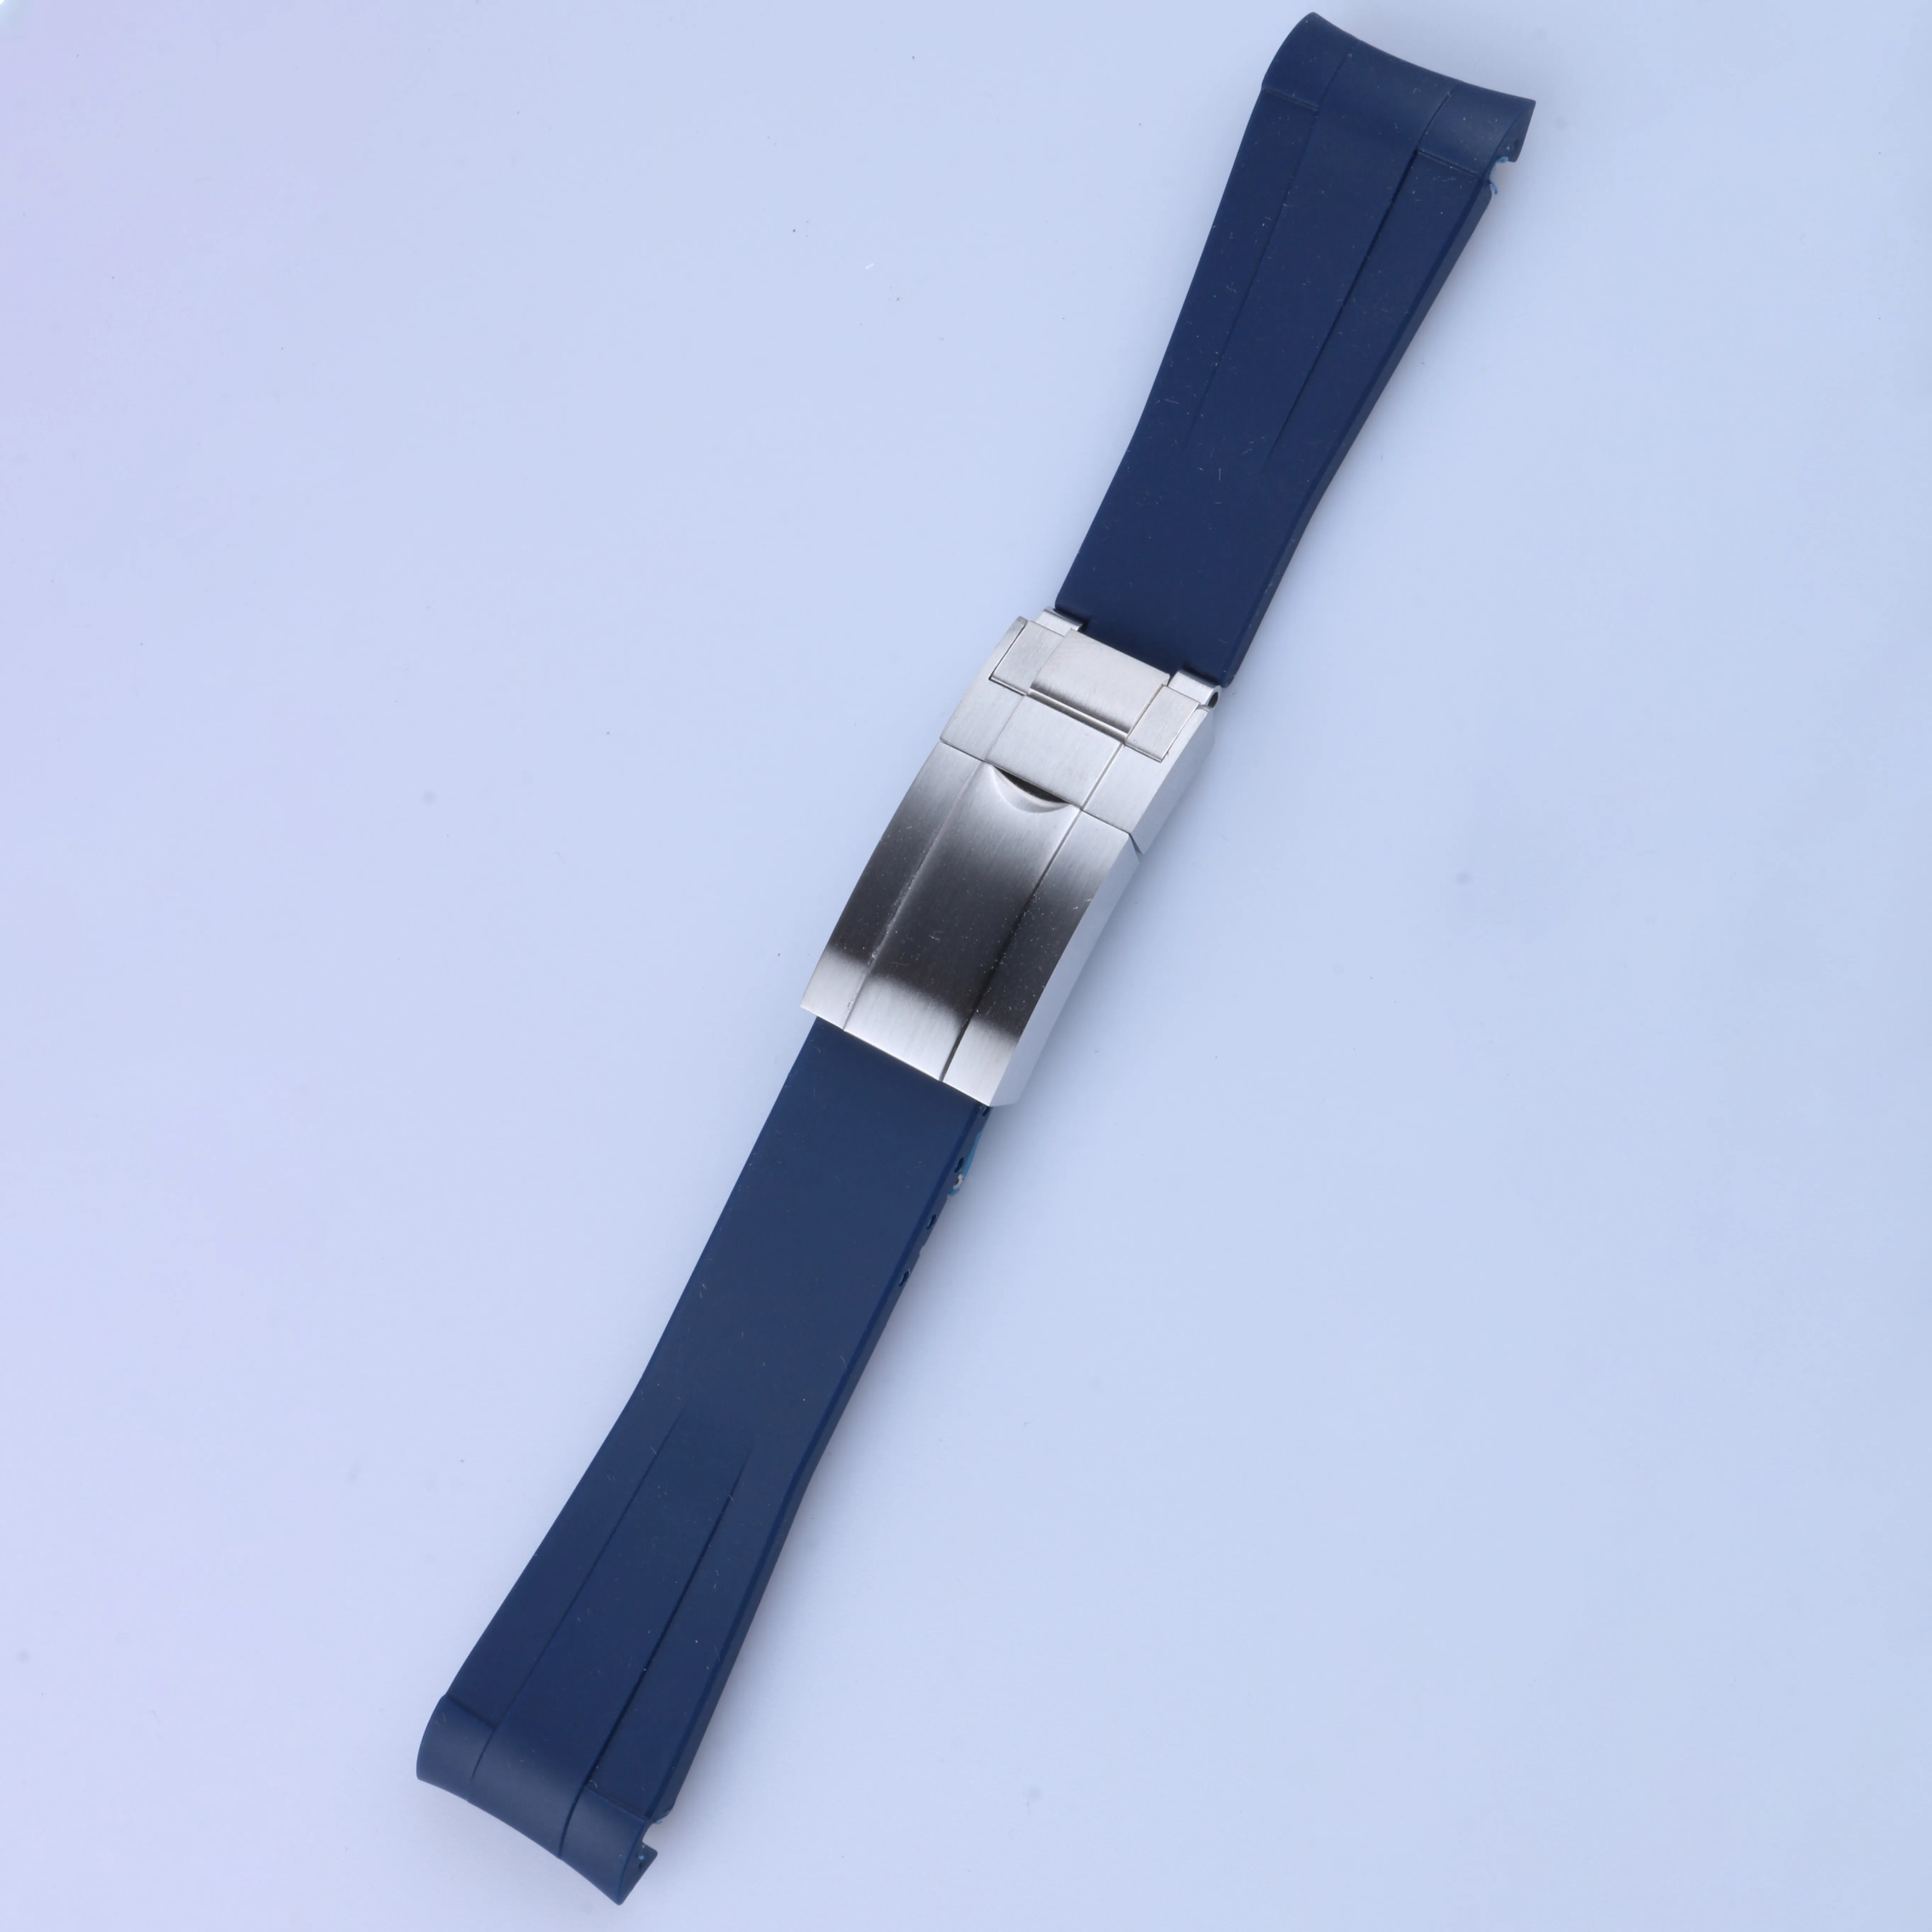 Bracelet d'extrémité incurvée de 20 mm et fermoir en argent tout brossé en silicone noir marine vert orange rouge bracelet de montre en caoutchouc pour bracelet Rol SUB GMT Dat235u